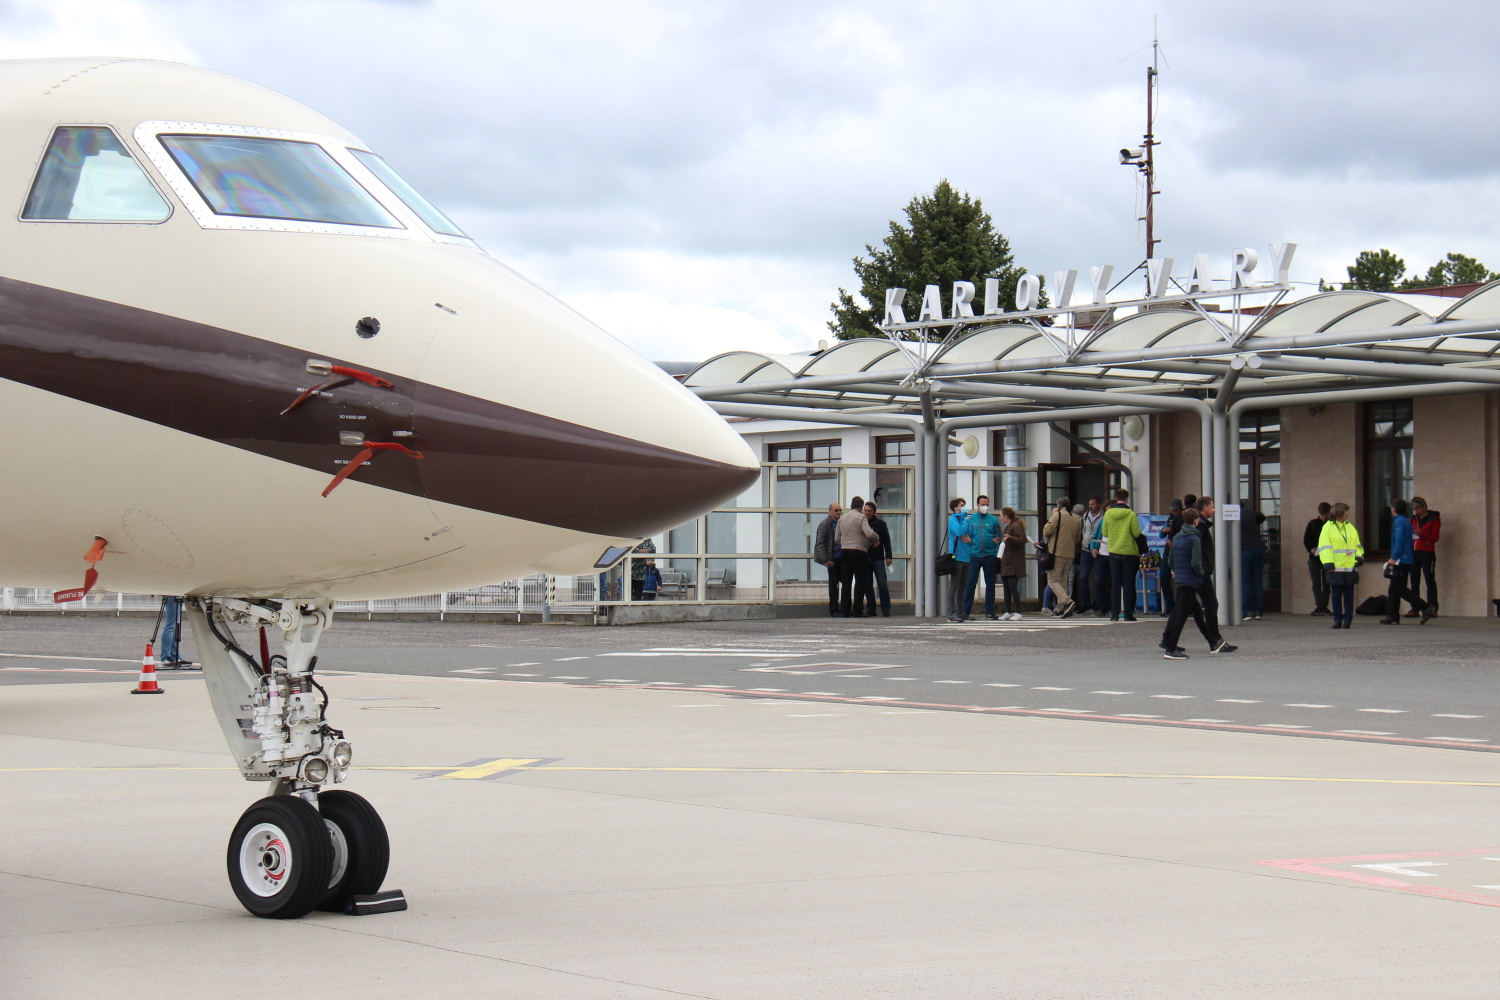 Karlovarské letiště meziročně odbavilo o více jak 30 procent více cestujících